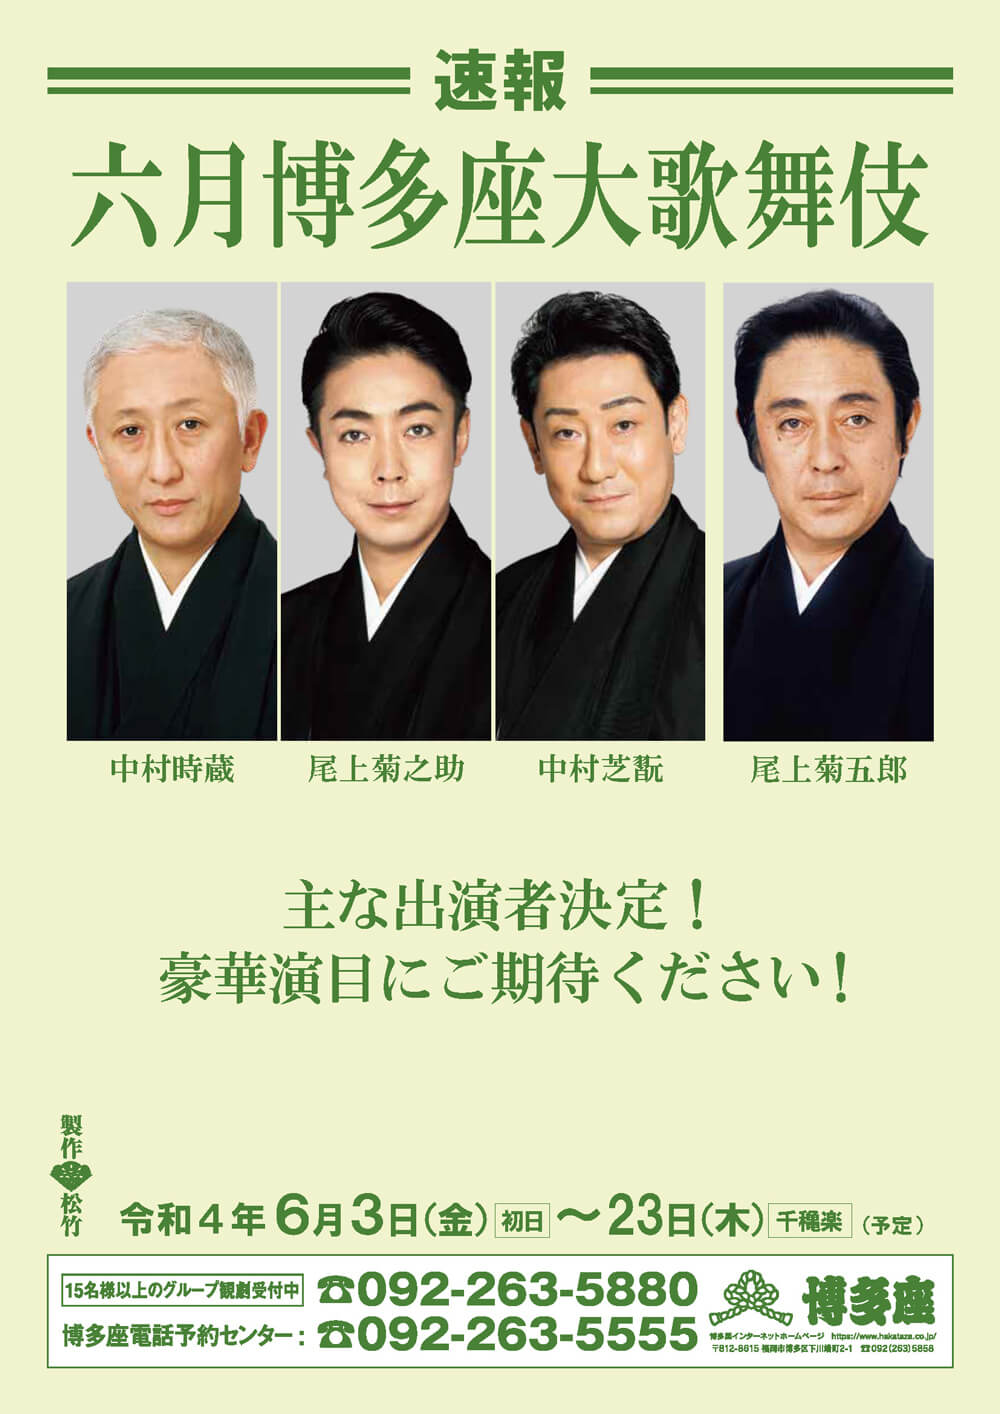 【博多座】「六月博多座大歌舞伎」公演情報を掲載しました